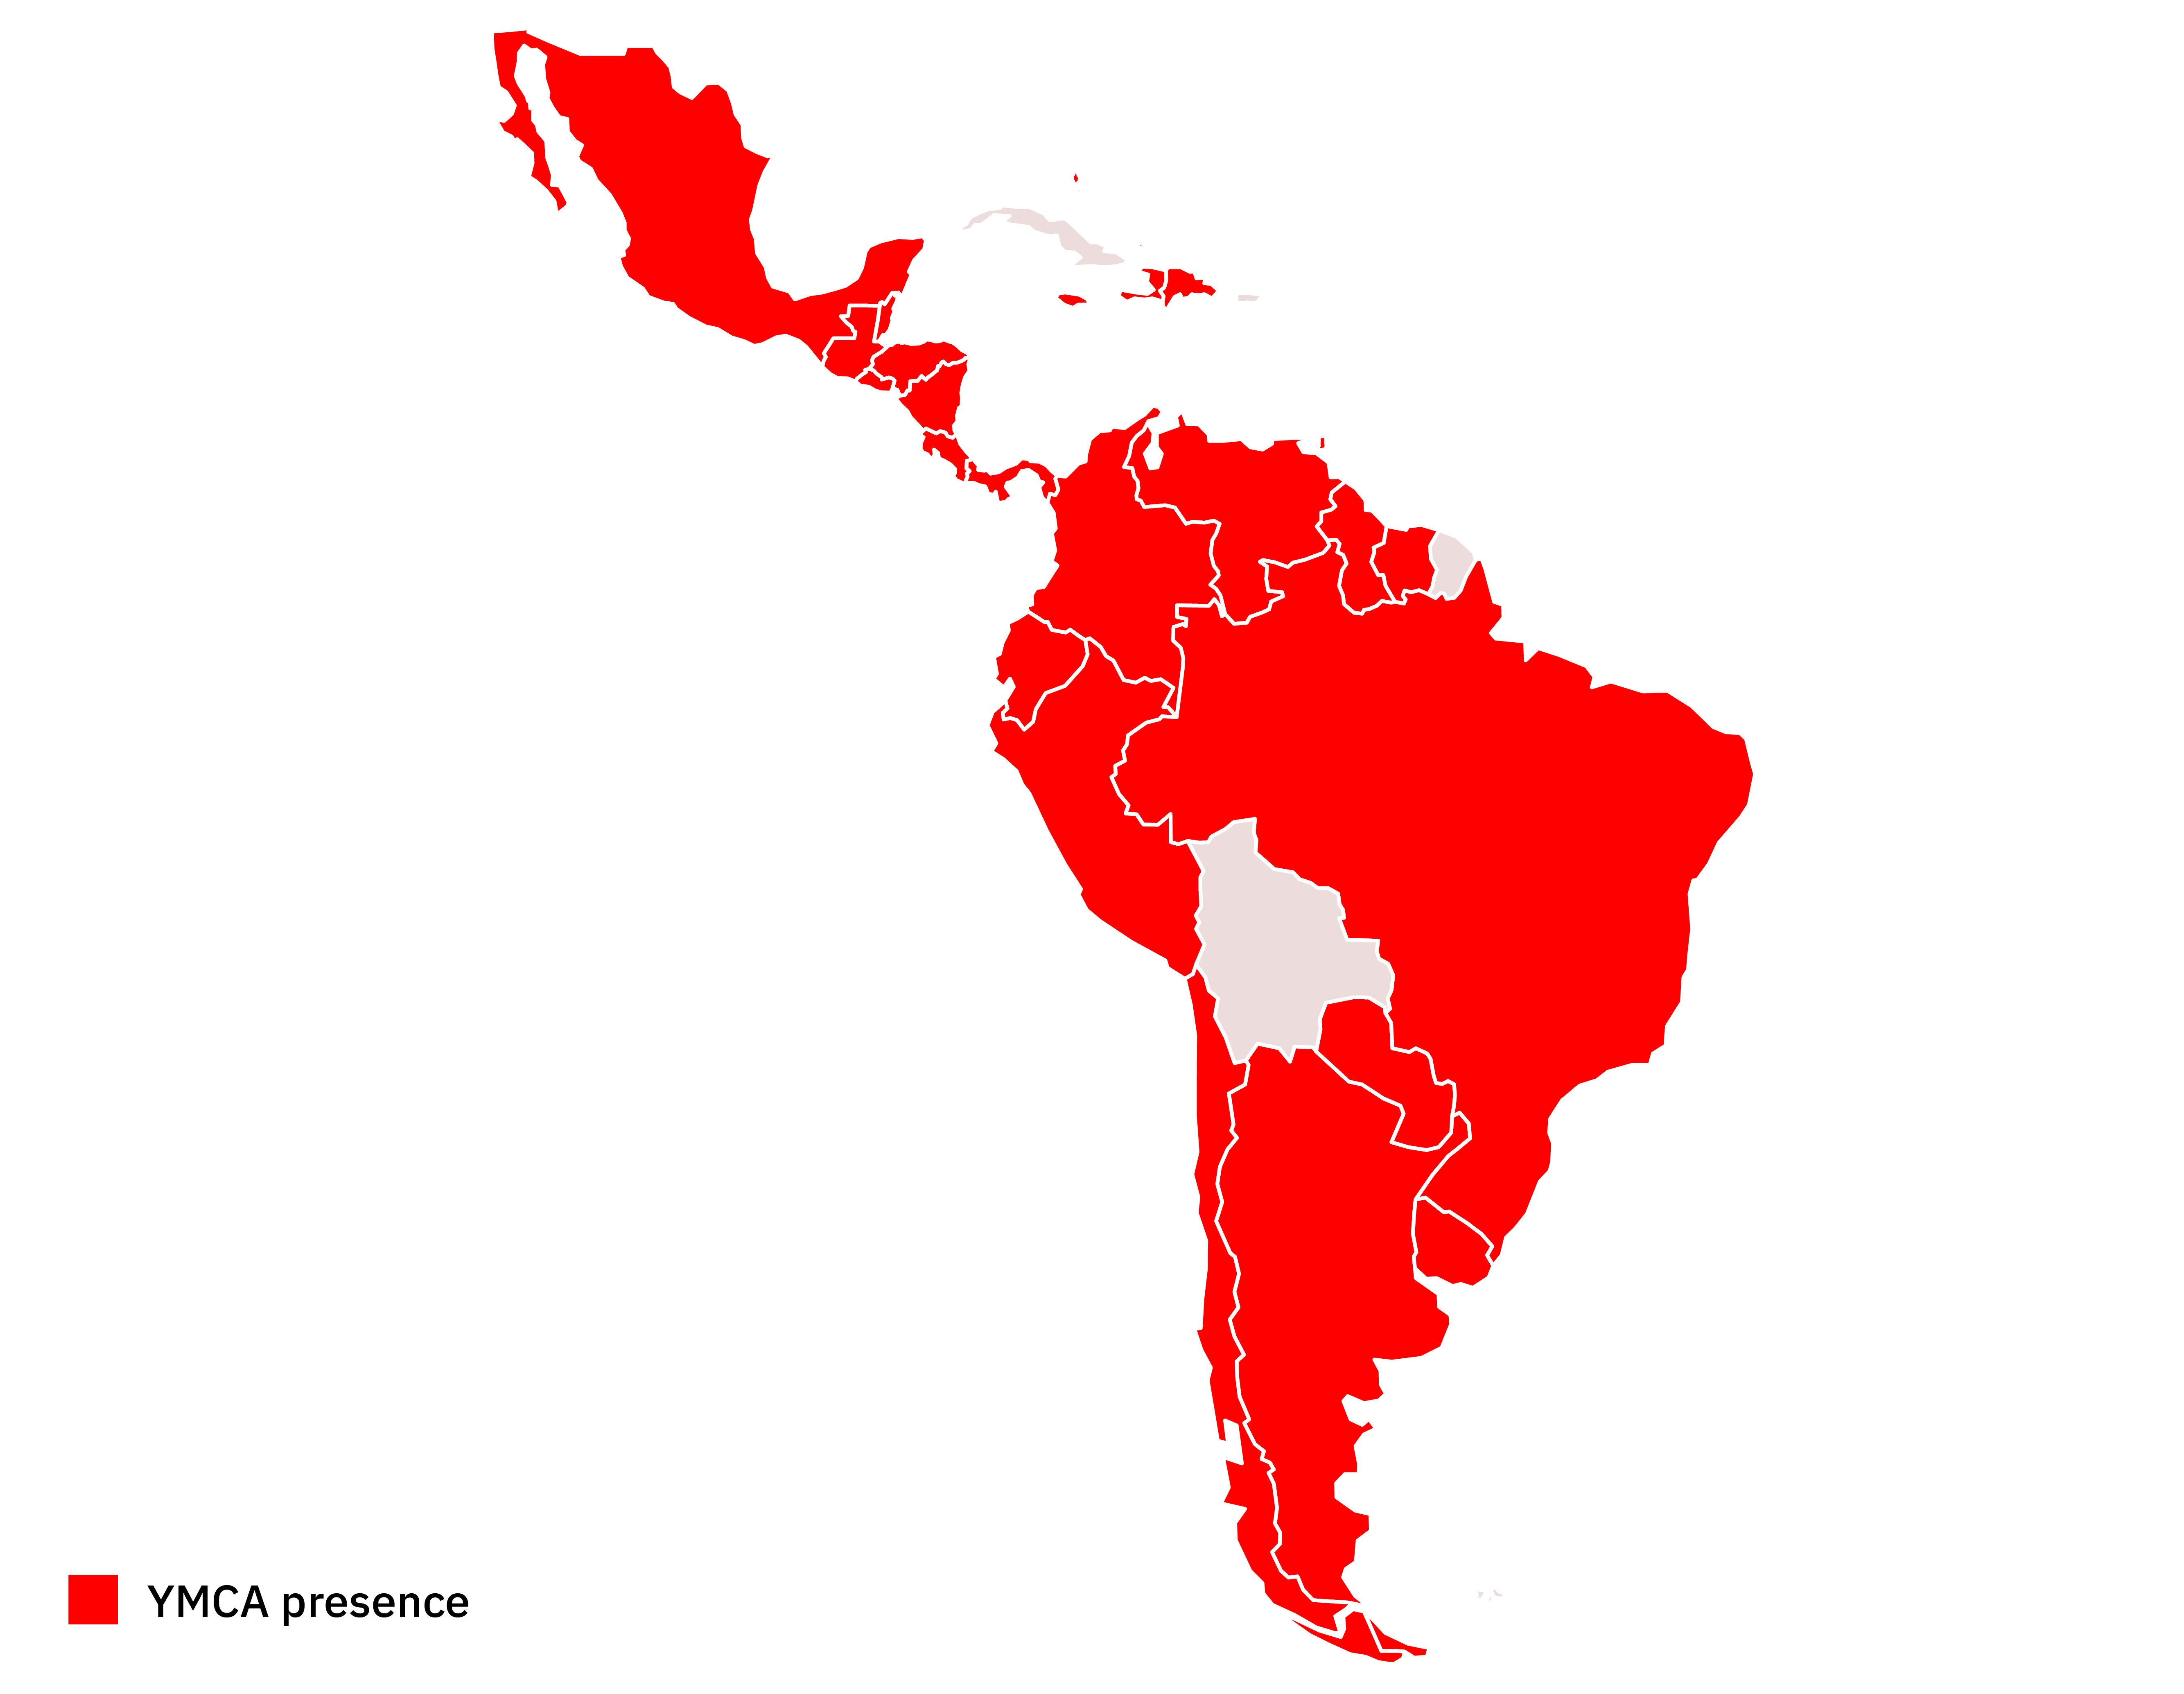 YMCA Presence in Latin America